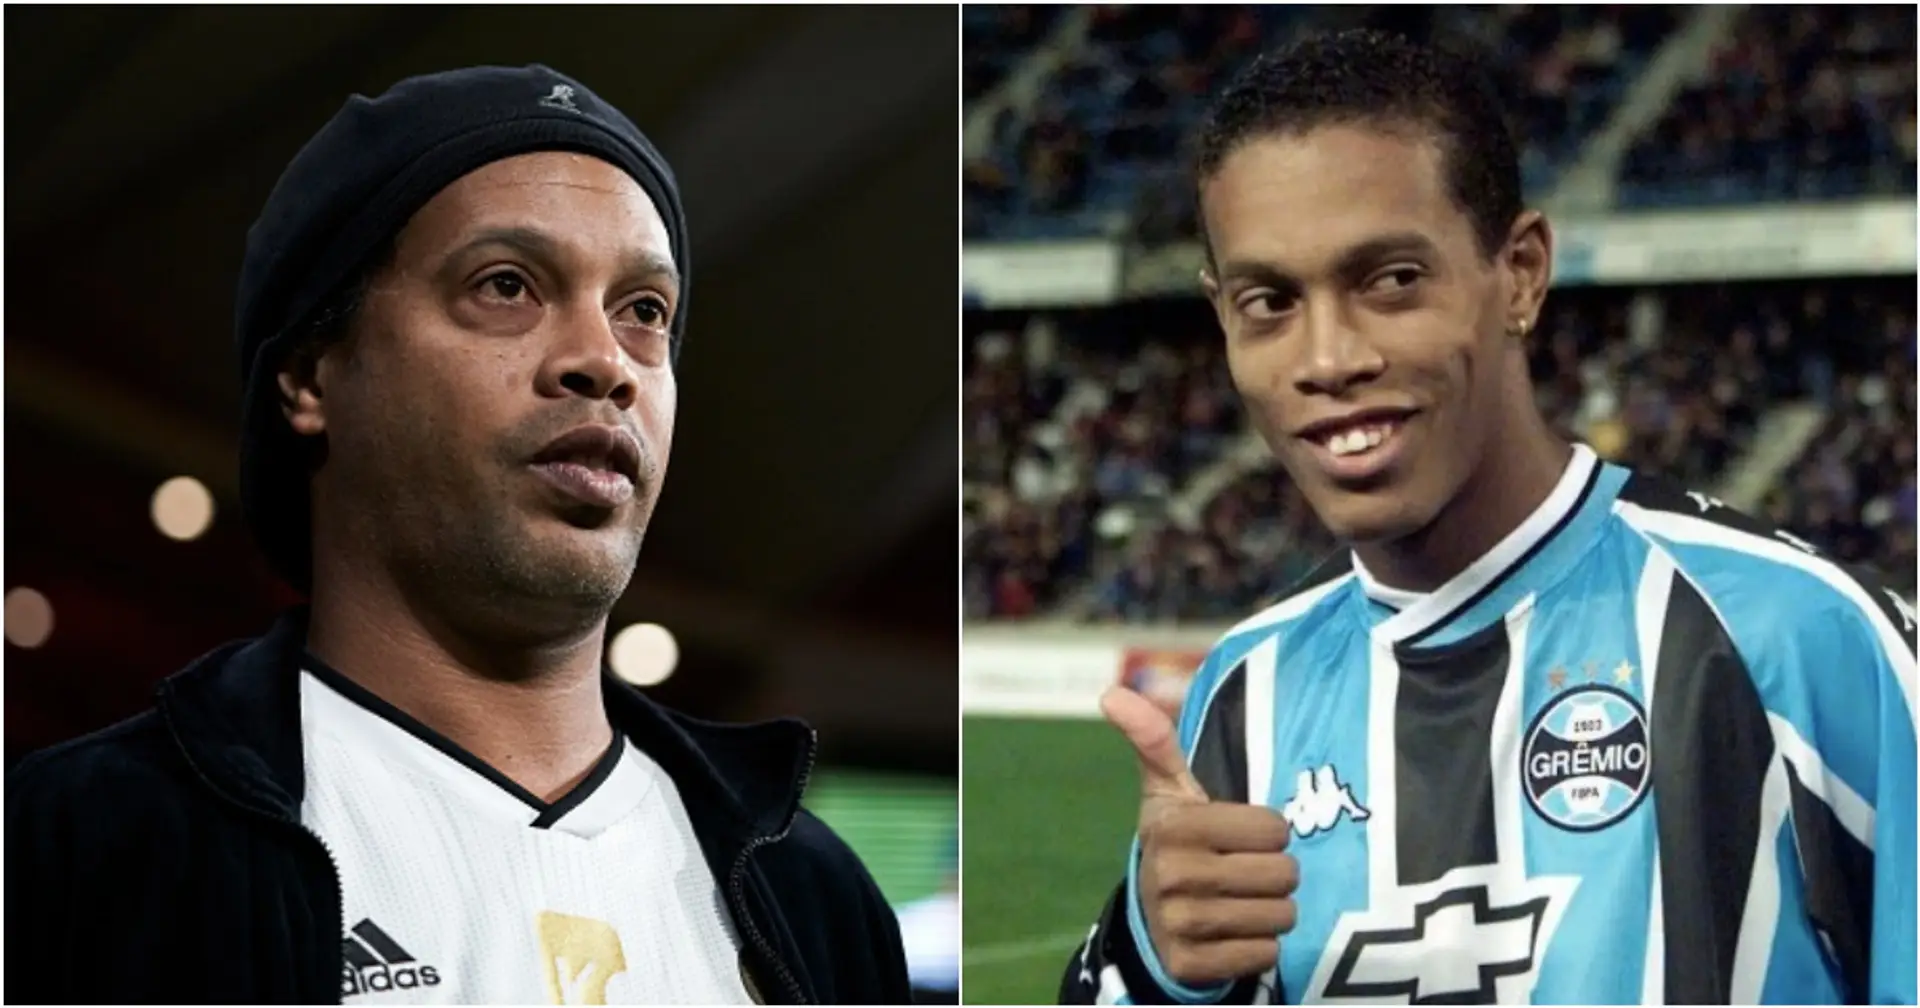 Pourquoi les fans de Gremio détestent-ils absolument Ronaldinho ?